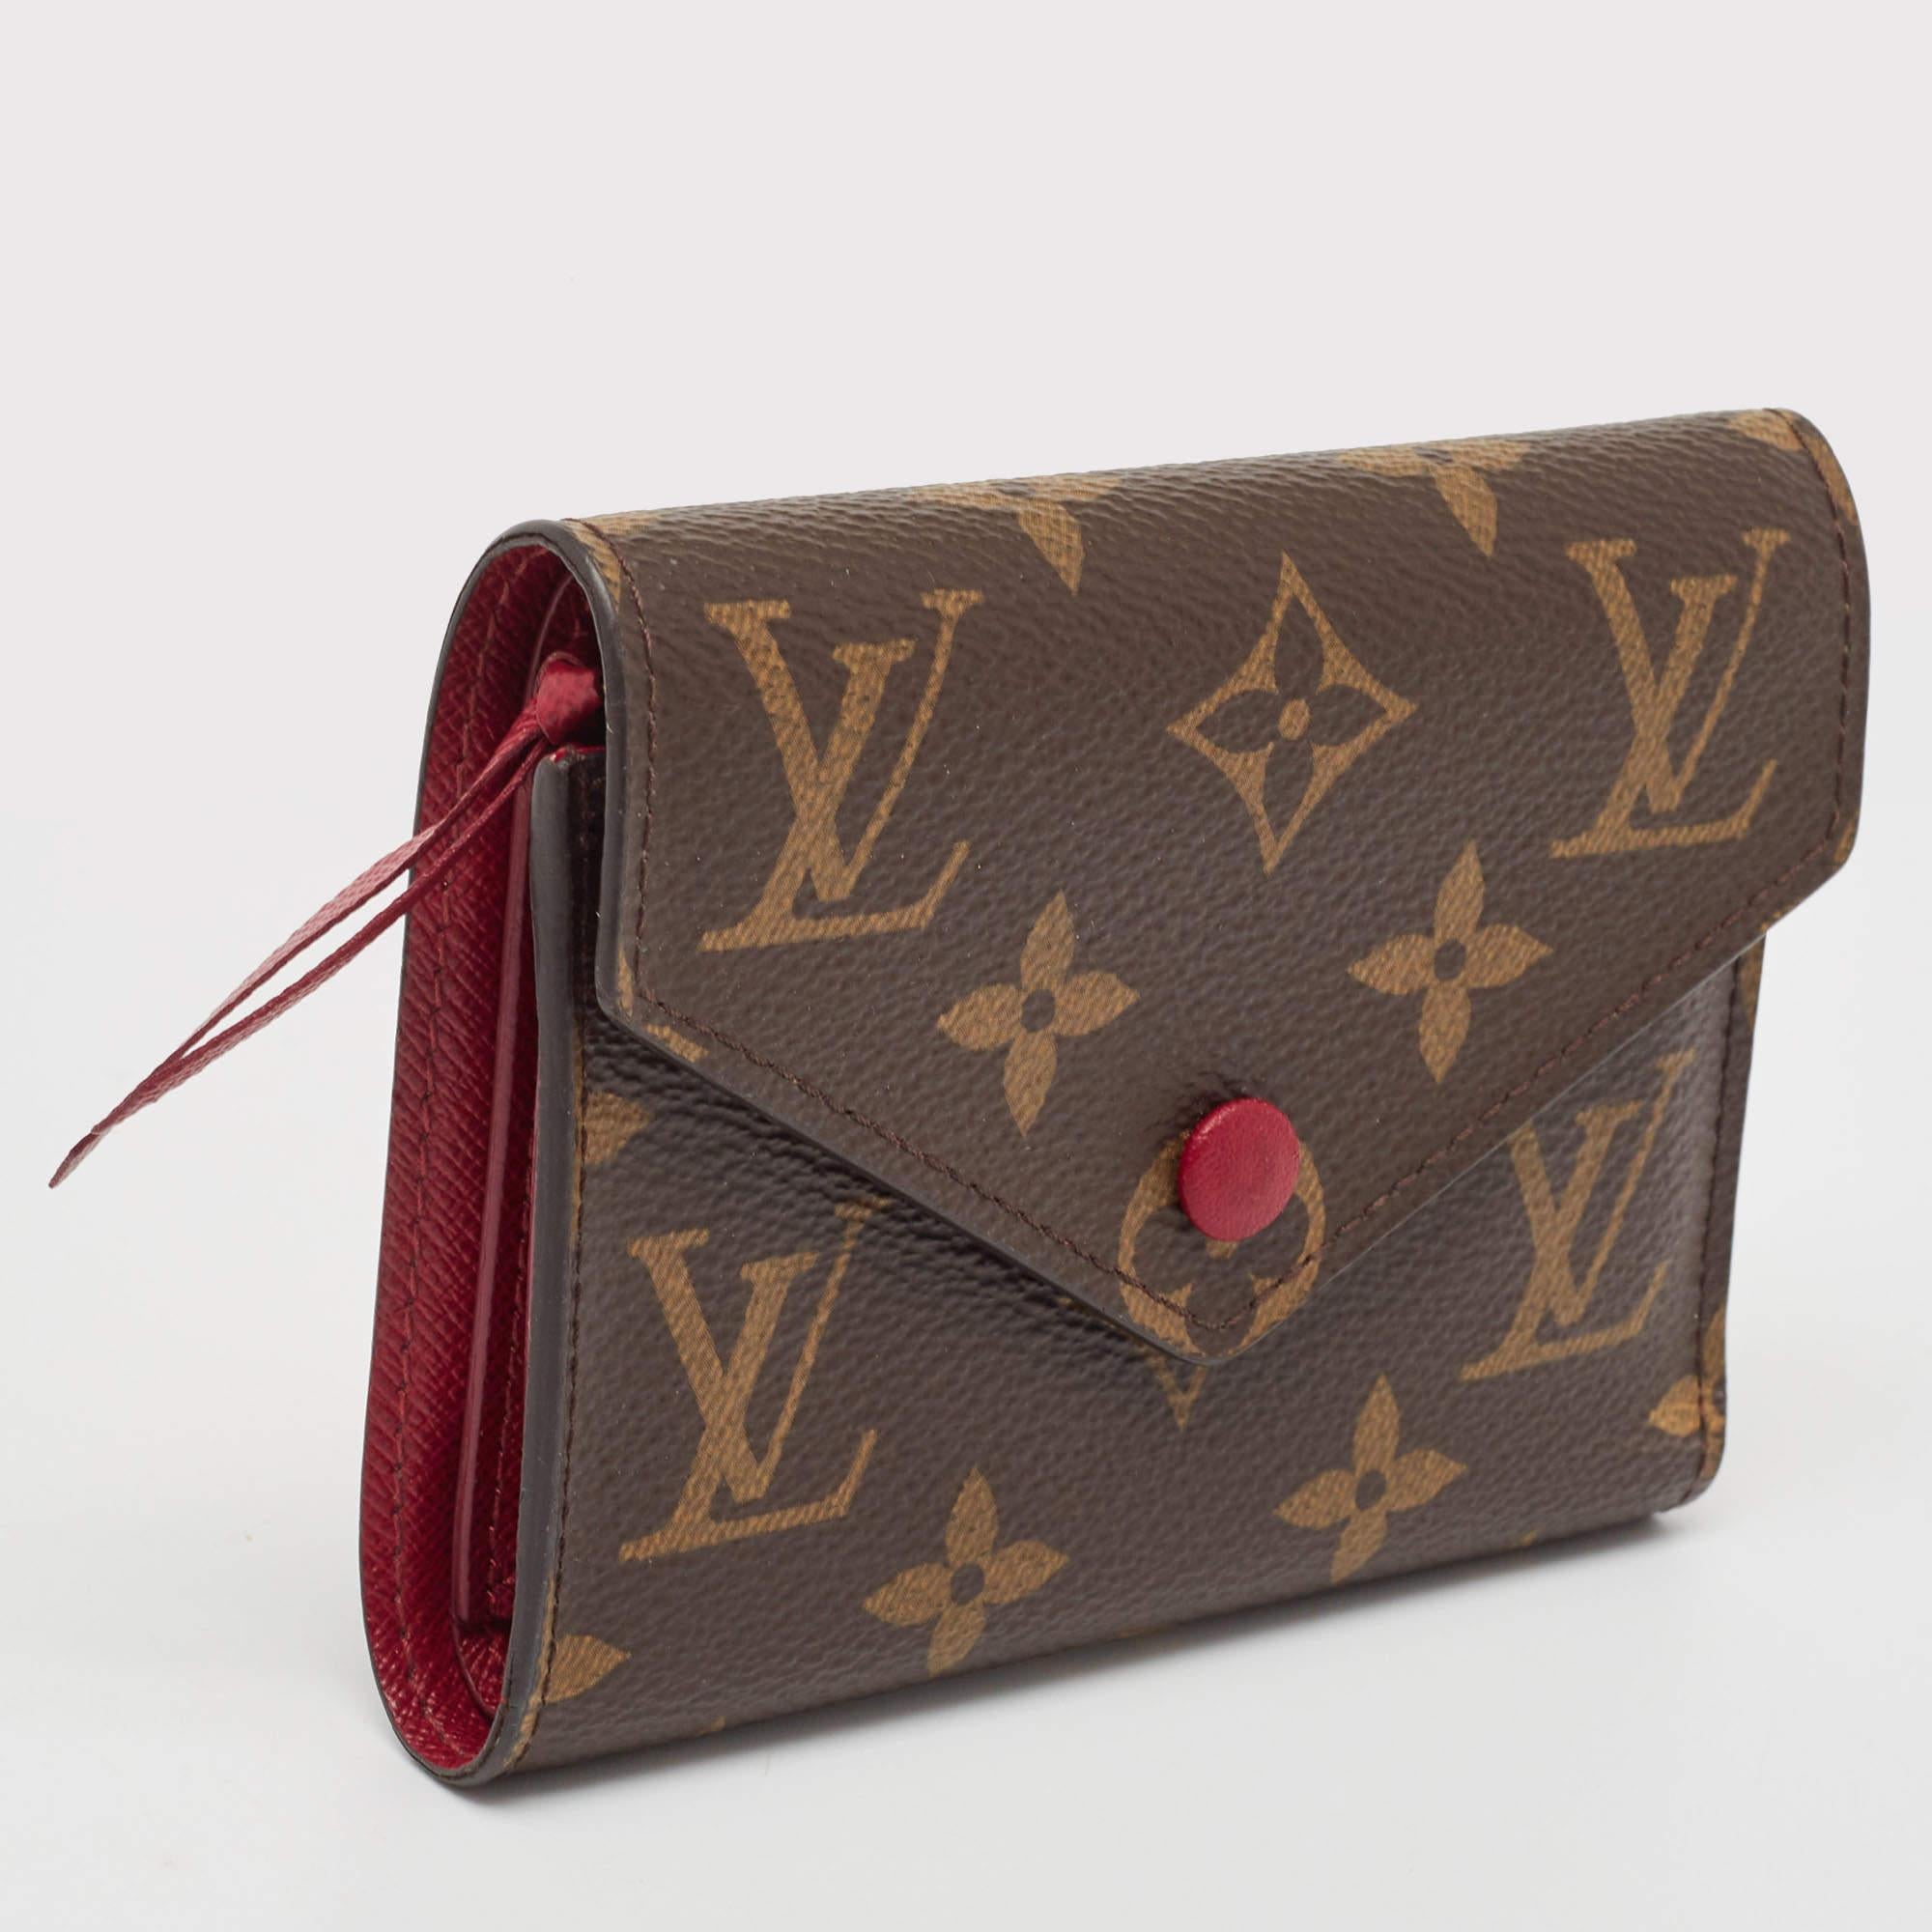 Diese schöne LV-Brieftasche für den täglichen Gebrauch ist perfekt, um sie alleine oder in Ihrer Tasche zu tragen, während Sie Besorgungen machen. Es ist ein langlebiges Zubehör.

